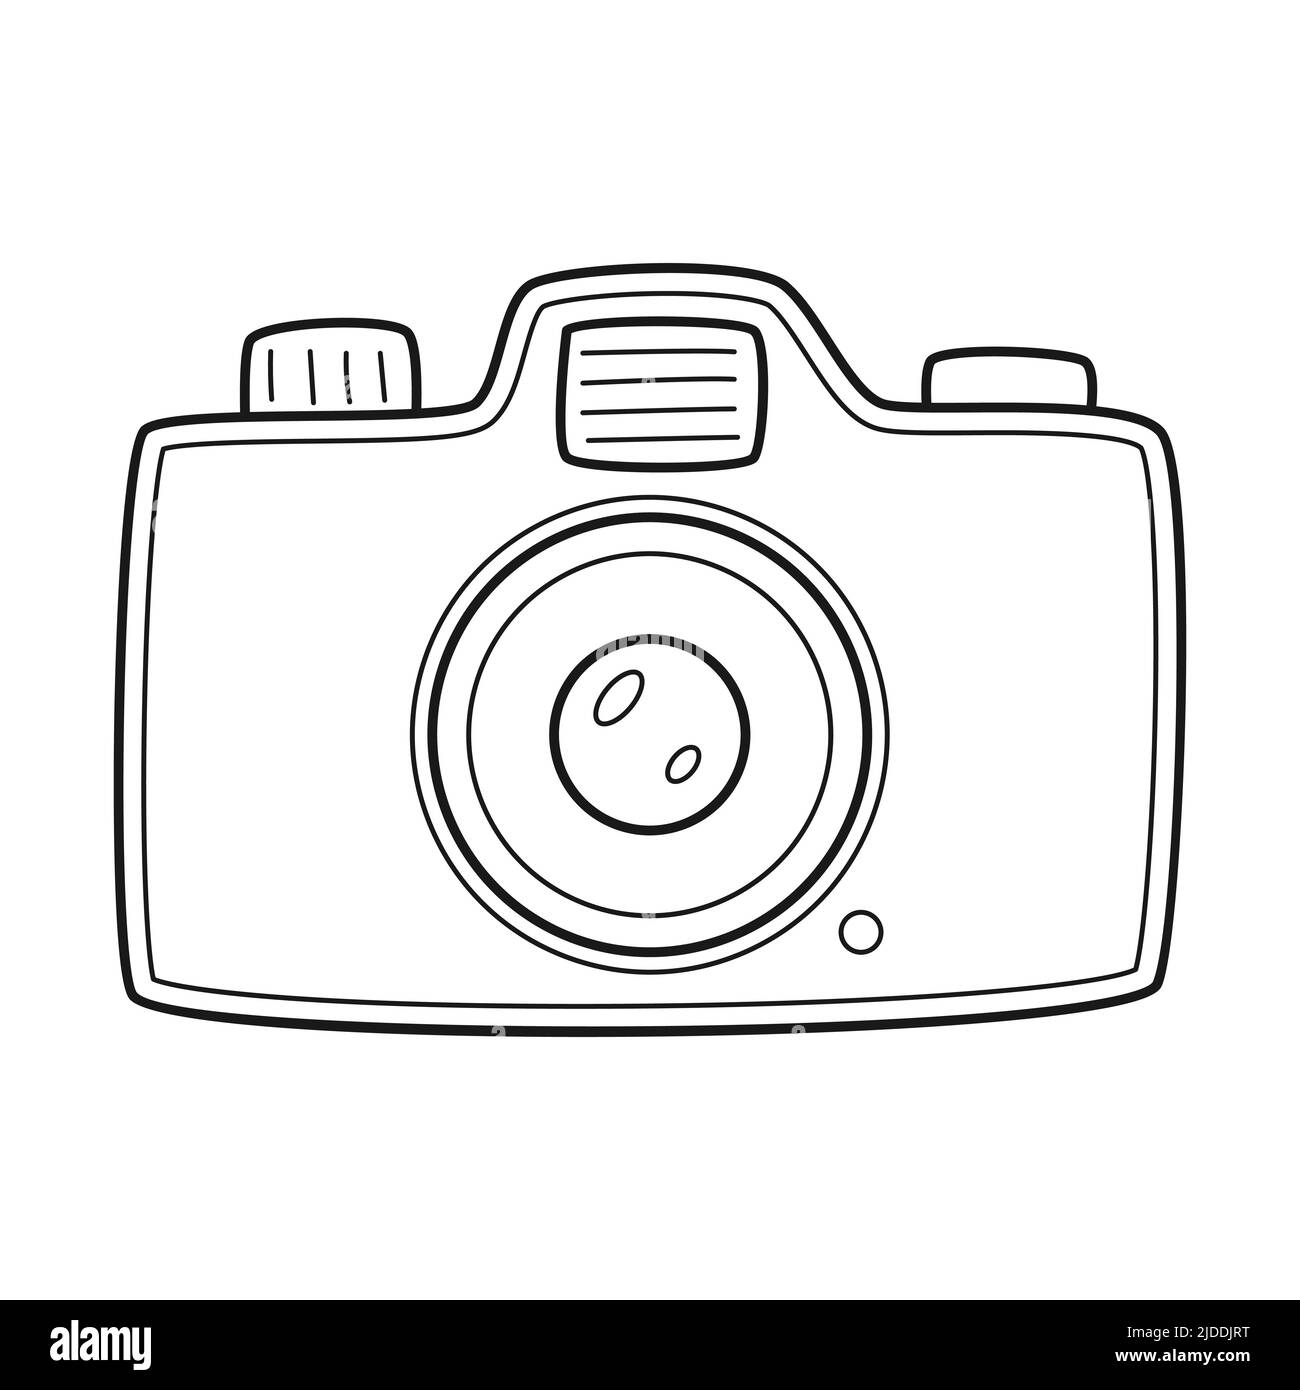 Spiegelreflexkamera Doodle. Ein Fotogerät mit Zoom und Blitz. Ein Symbol des Reisens, des Abenteuers. Skizzieren Sie eine auf einem isolierte schwarz-weiße Vektorgrafik Stock Vektor